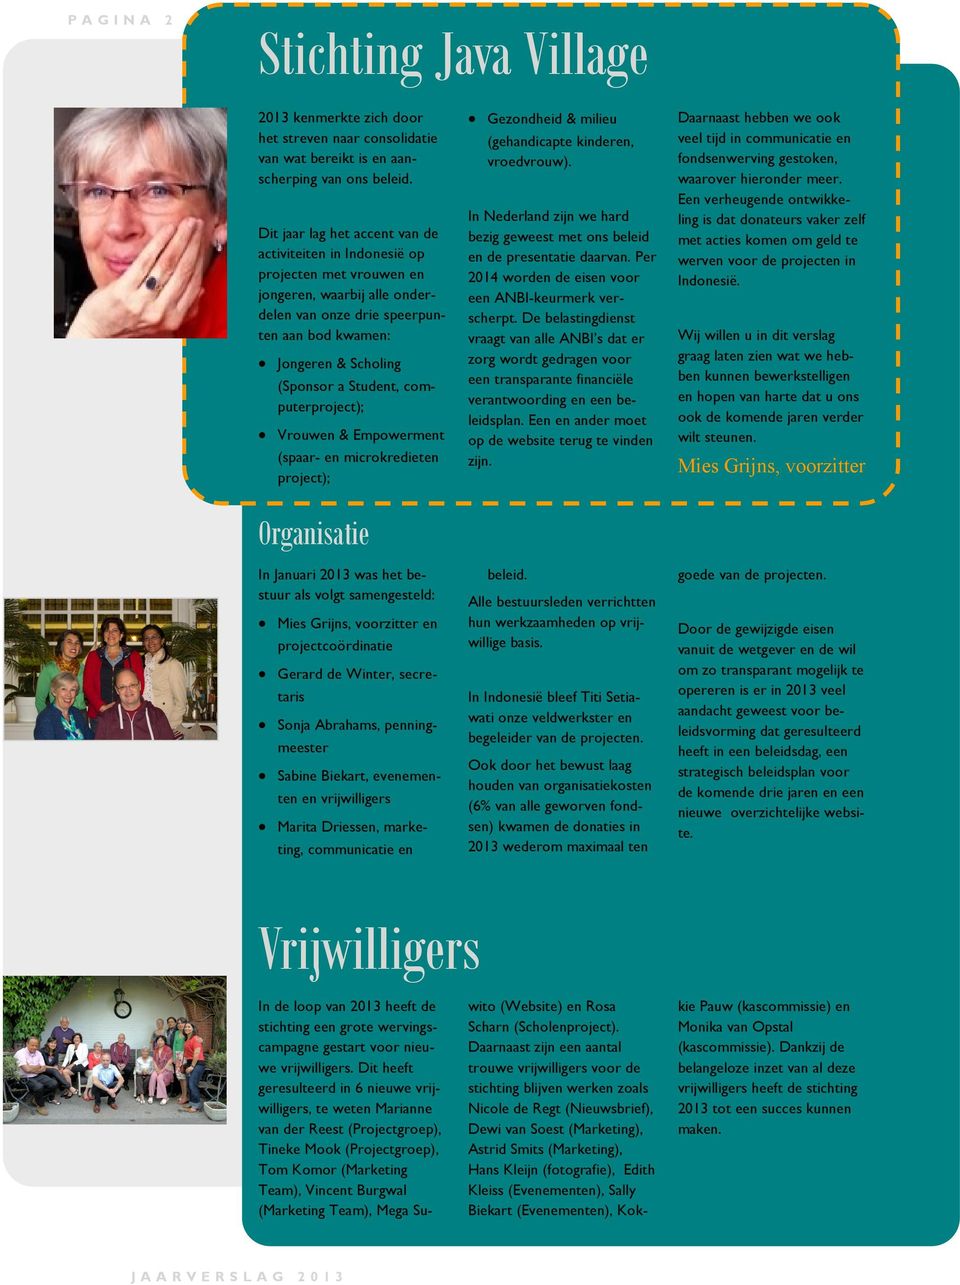 Student, computerproject); Vrouwen & Empowerment (spaar- en microkredieten project); Organisatie In Januari 2013 was het bestuur als volgt samengesteld: Mies Grijns, voorzitter en projectcoördinatie